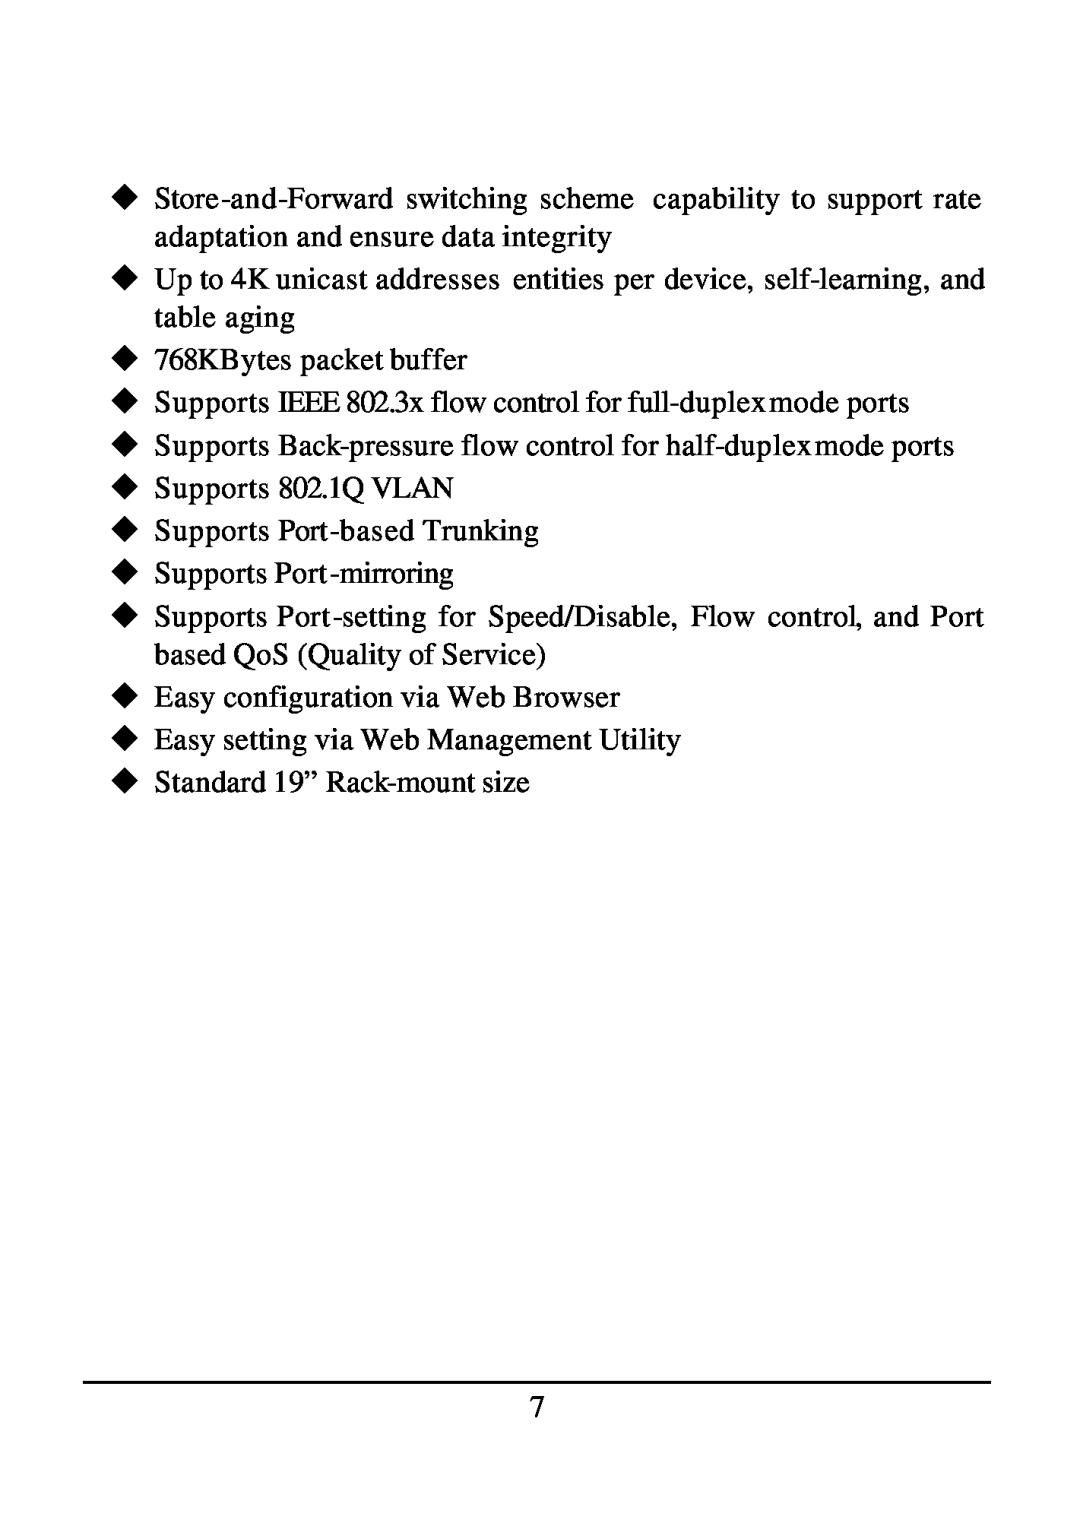 D-Link DES-1526 u768KBytes packet buffer, uSupports 802.1Q VLAN, uSupports Port-basedTrunking, uSupports Port -mirroring 